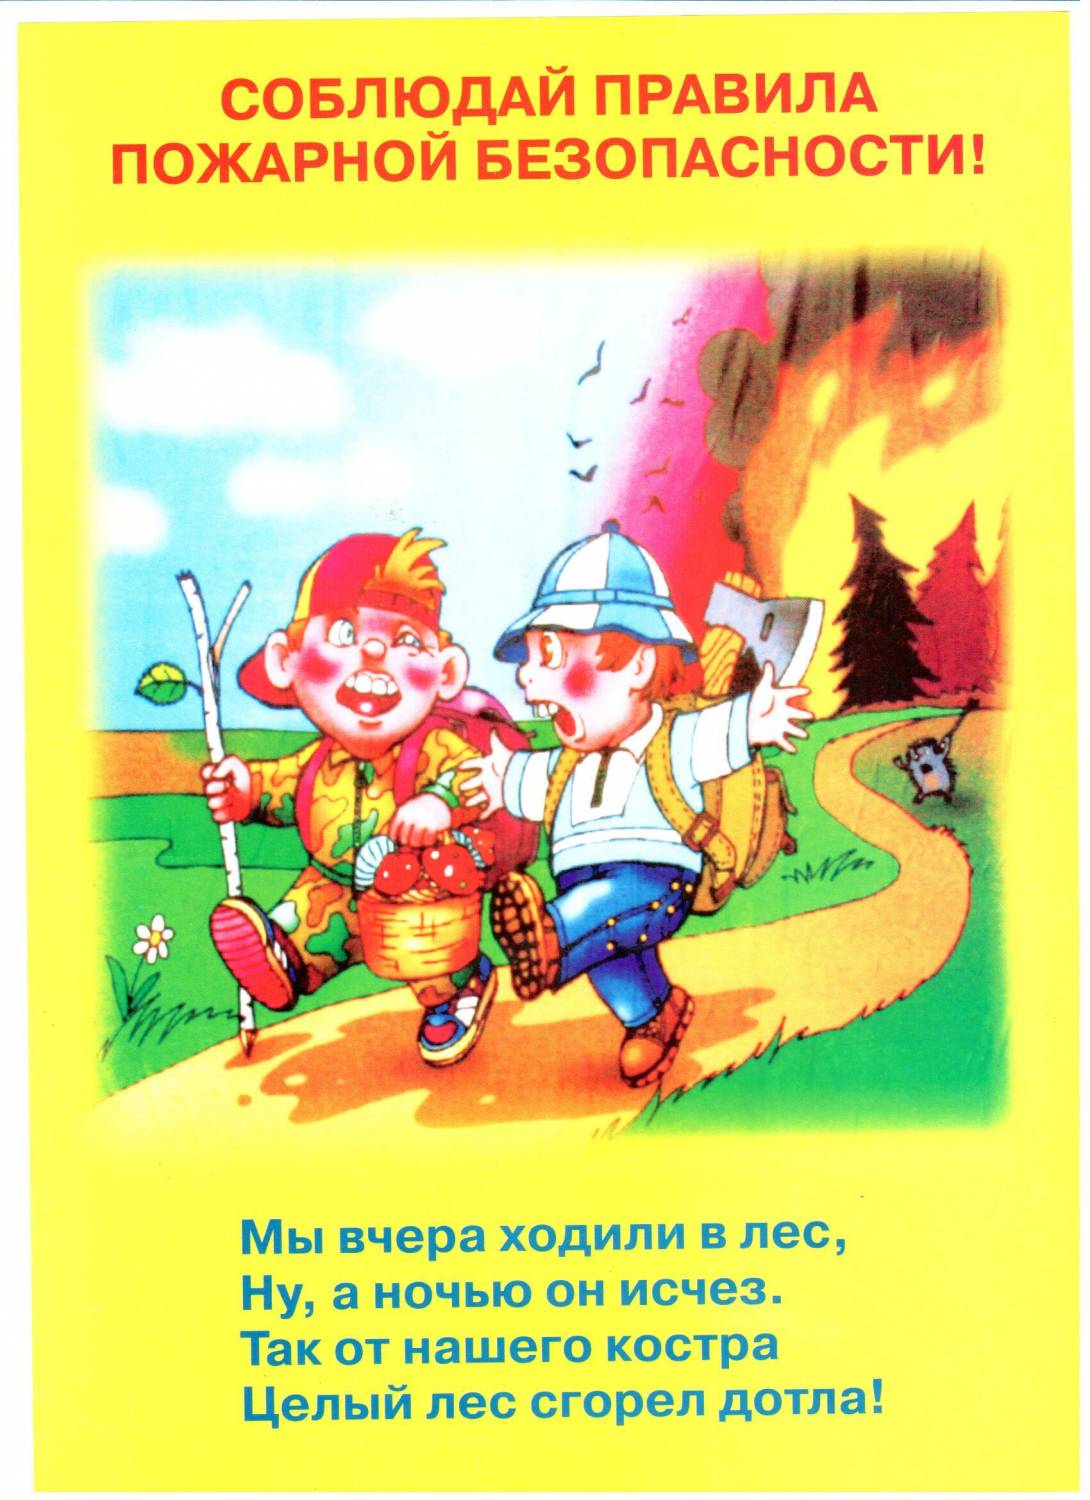 Пожарная безопасность в лесу для детей. Правила пожарной безопасности. Пожарная безопастность. Пожарная безопасность для дошкольников. Пожарная безопасность детя.